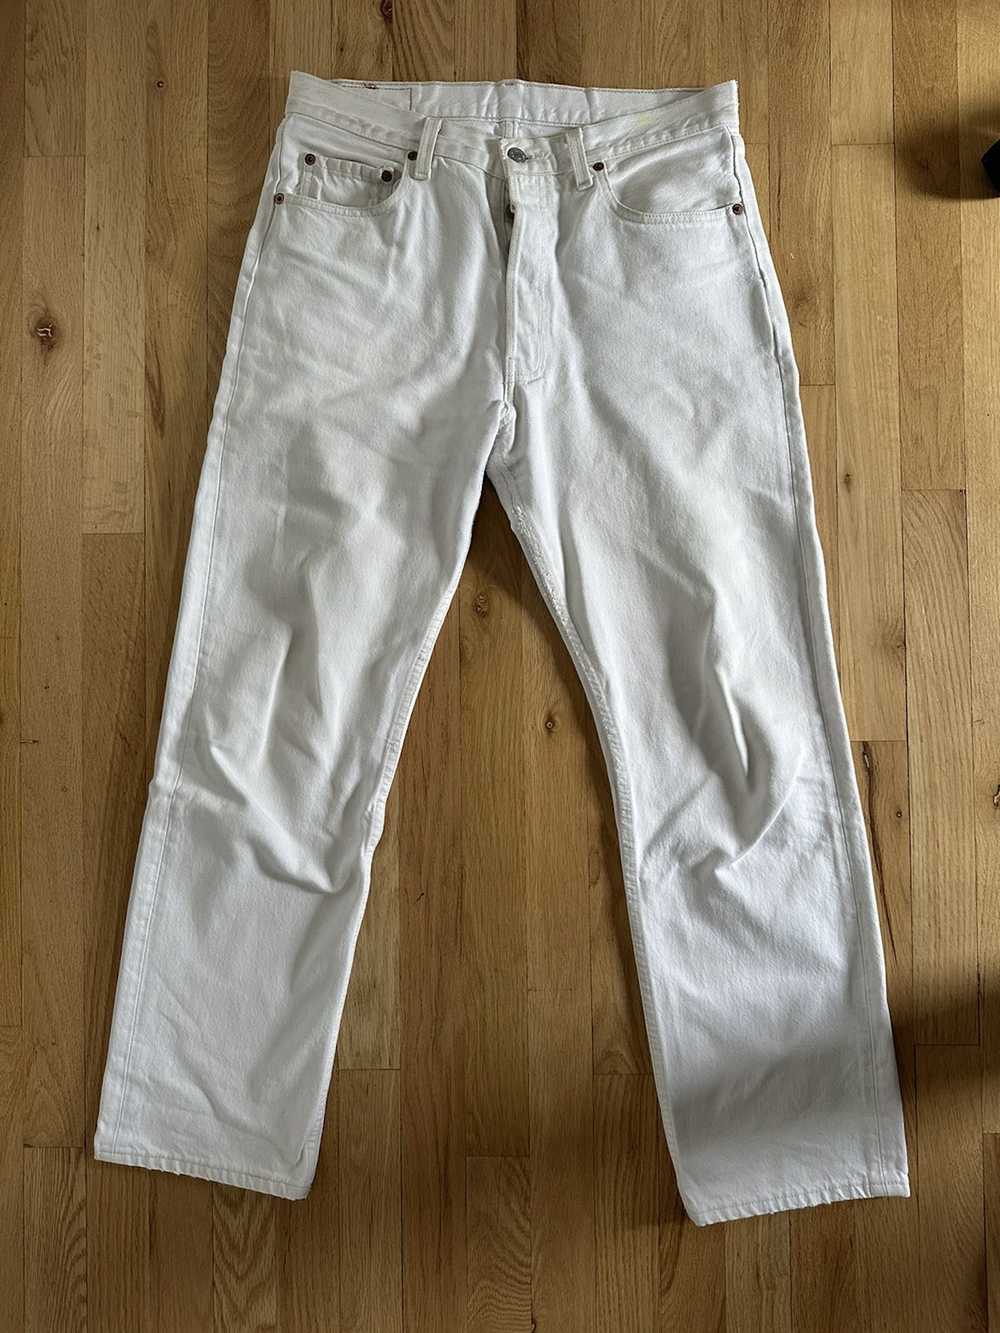 Levi's Vintage White Levi’s 501 Jeans - image 1